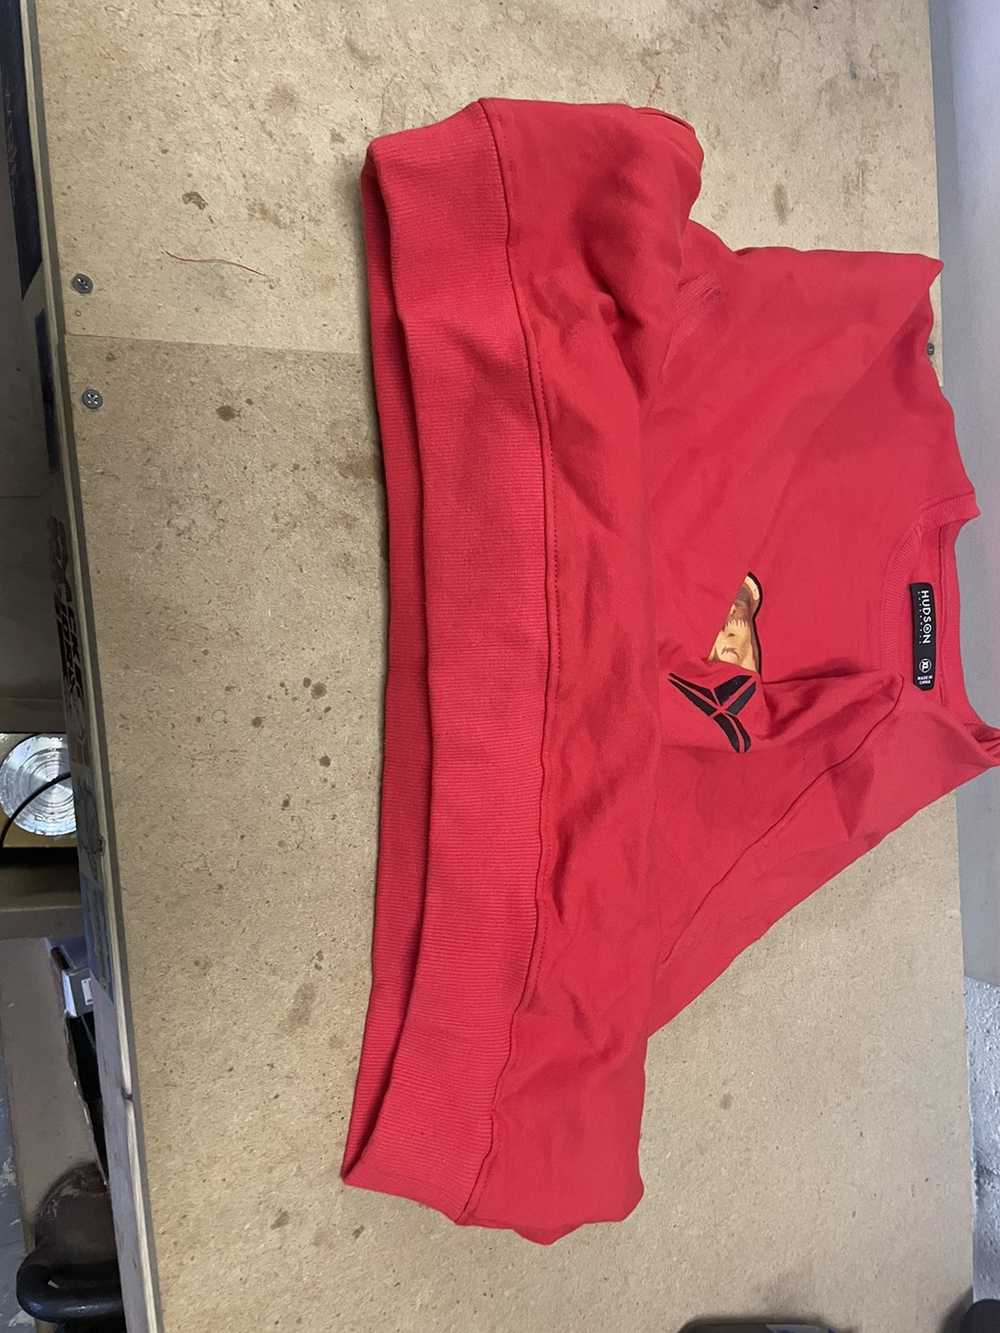 Hudson Outerwear Hudson sweatshirt red Size Large… - image 6